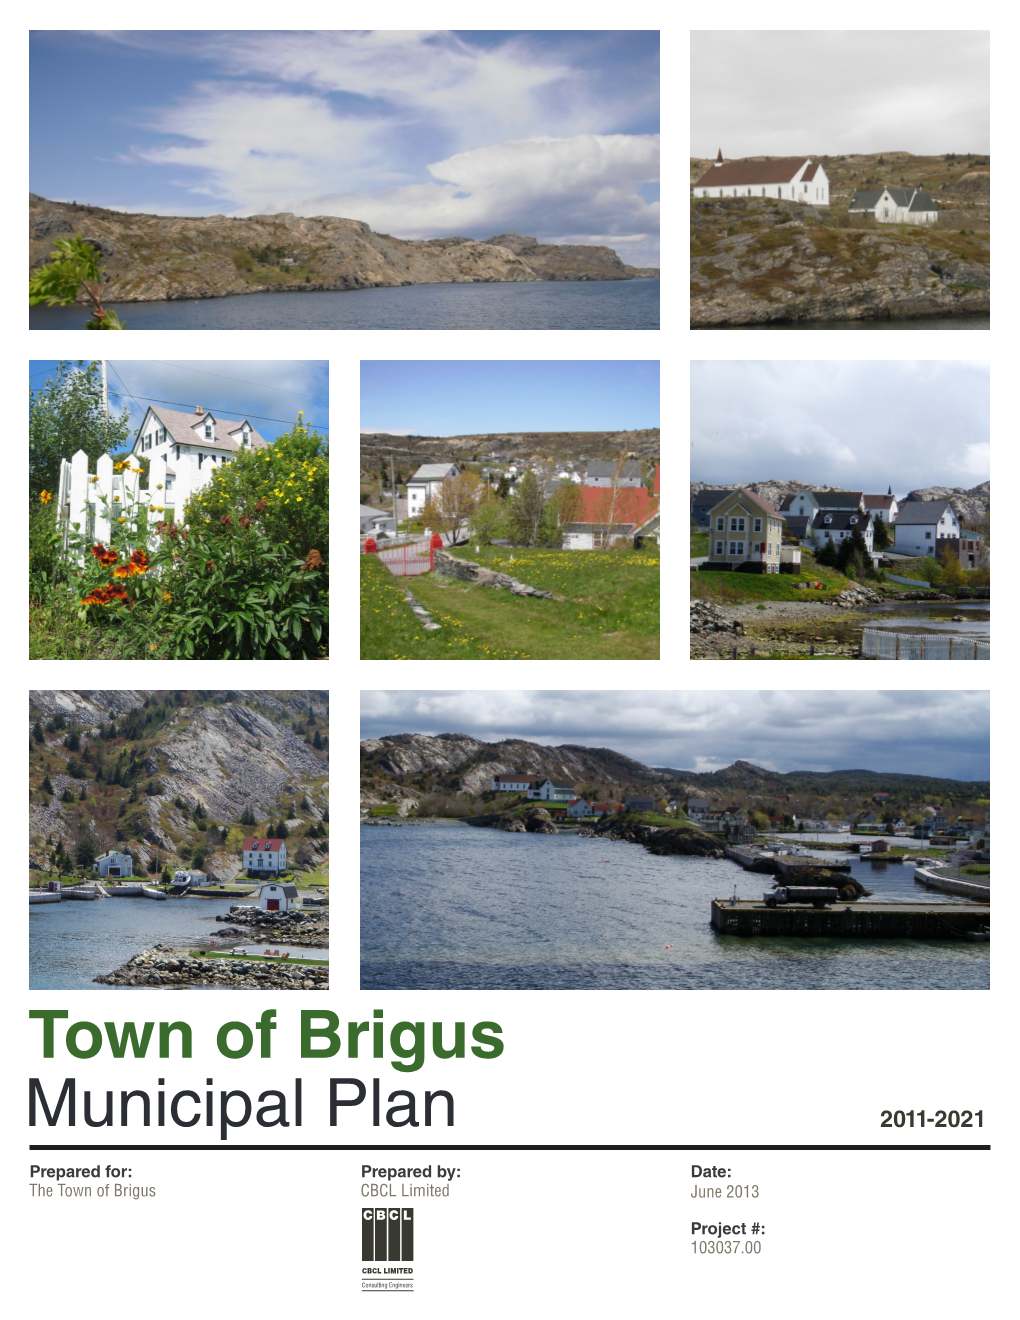 Town of Brigus Municipal Plan 2011 - 2021